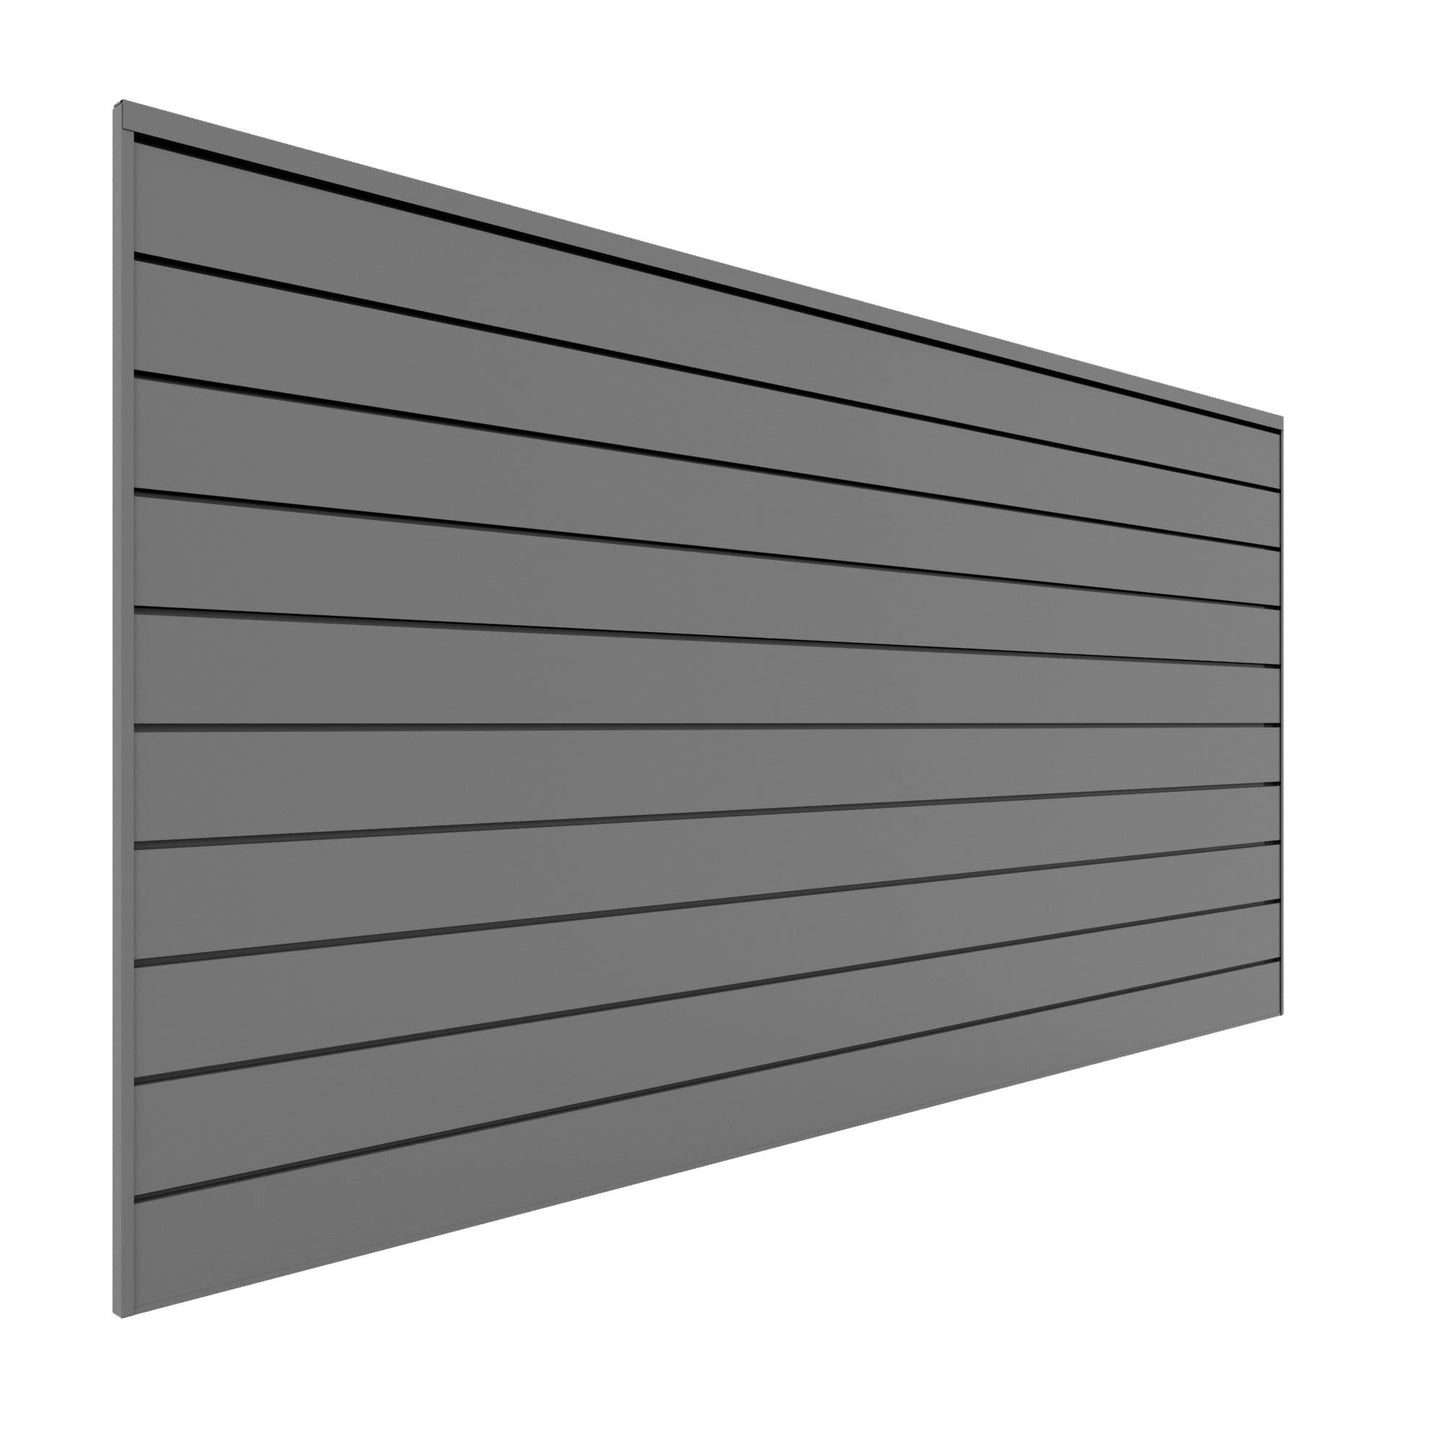 Proslat 88107 Heavy Duty PVC Slatwall Garage Organizer, 8-Feet by 4-Feet Section, 10 Panels, Light Grey